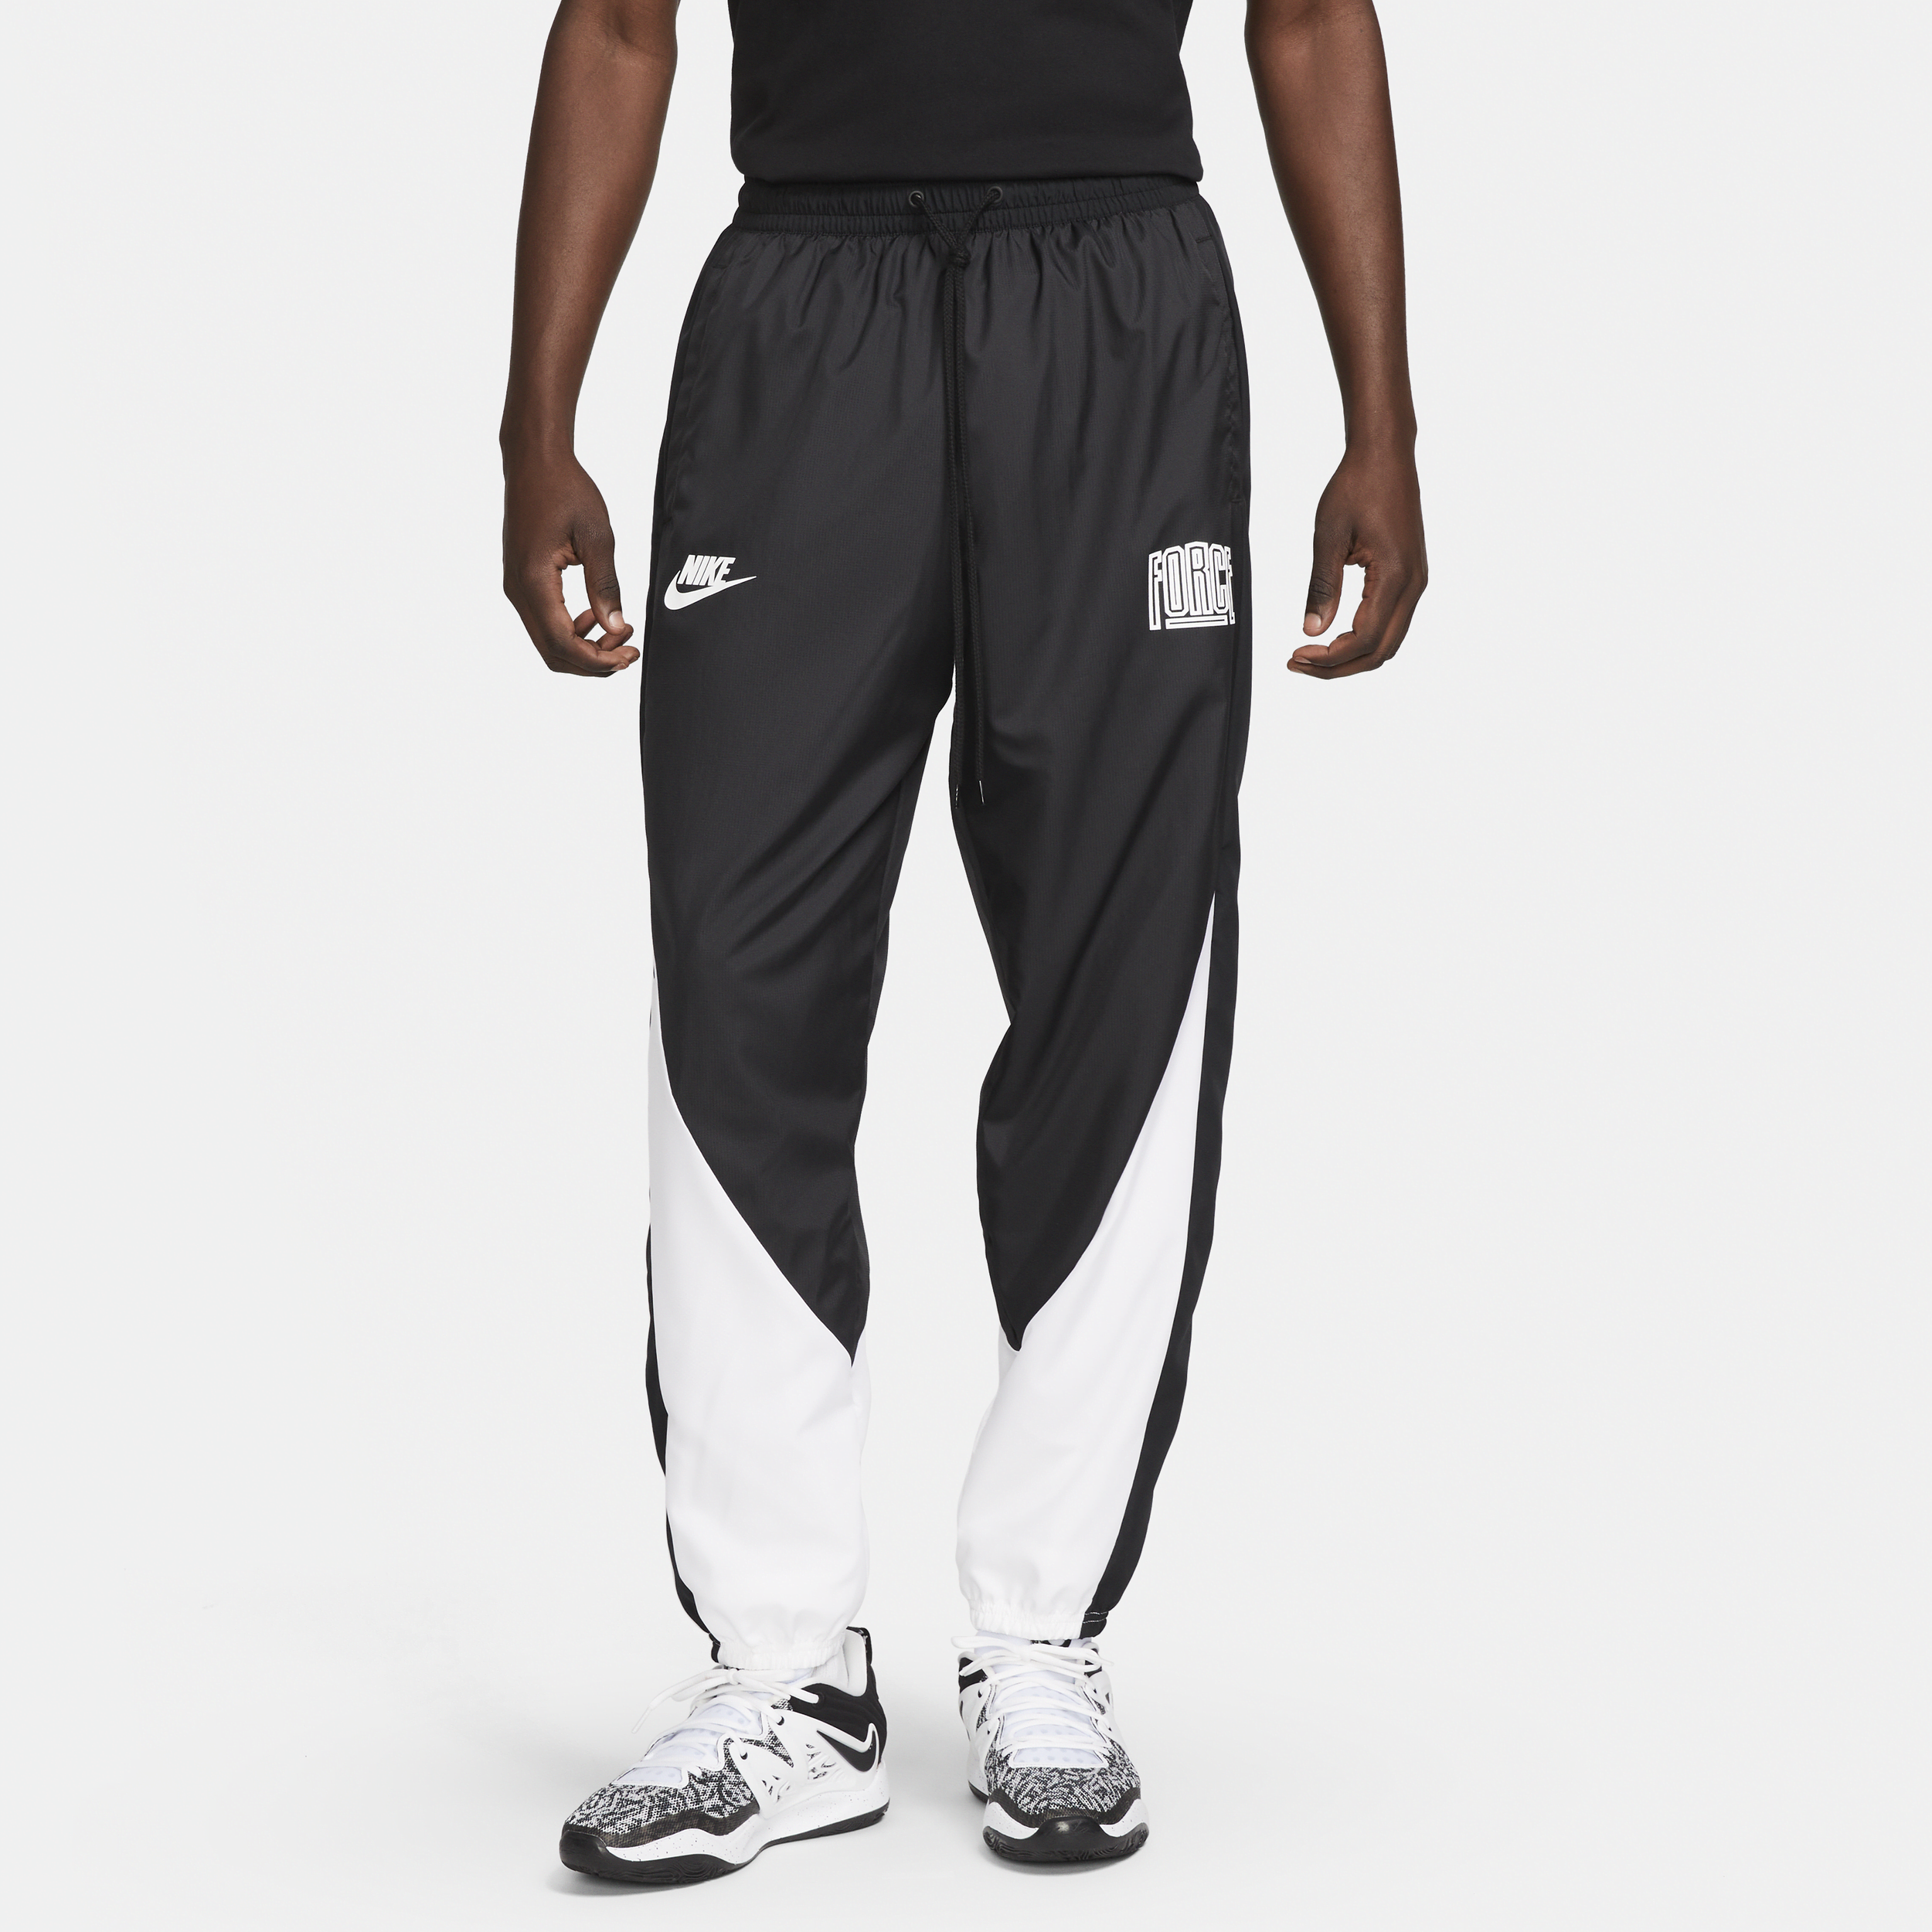 Nike Starting 5-basketballbukser til mænd - sort